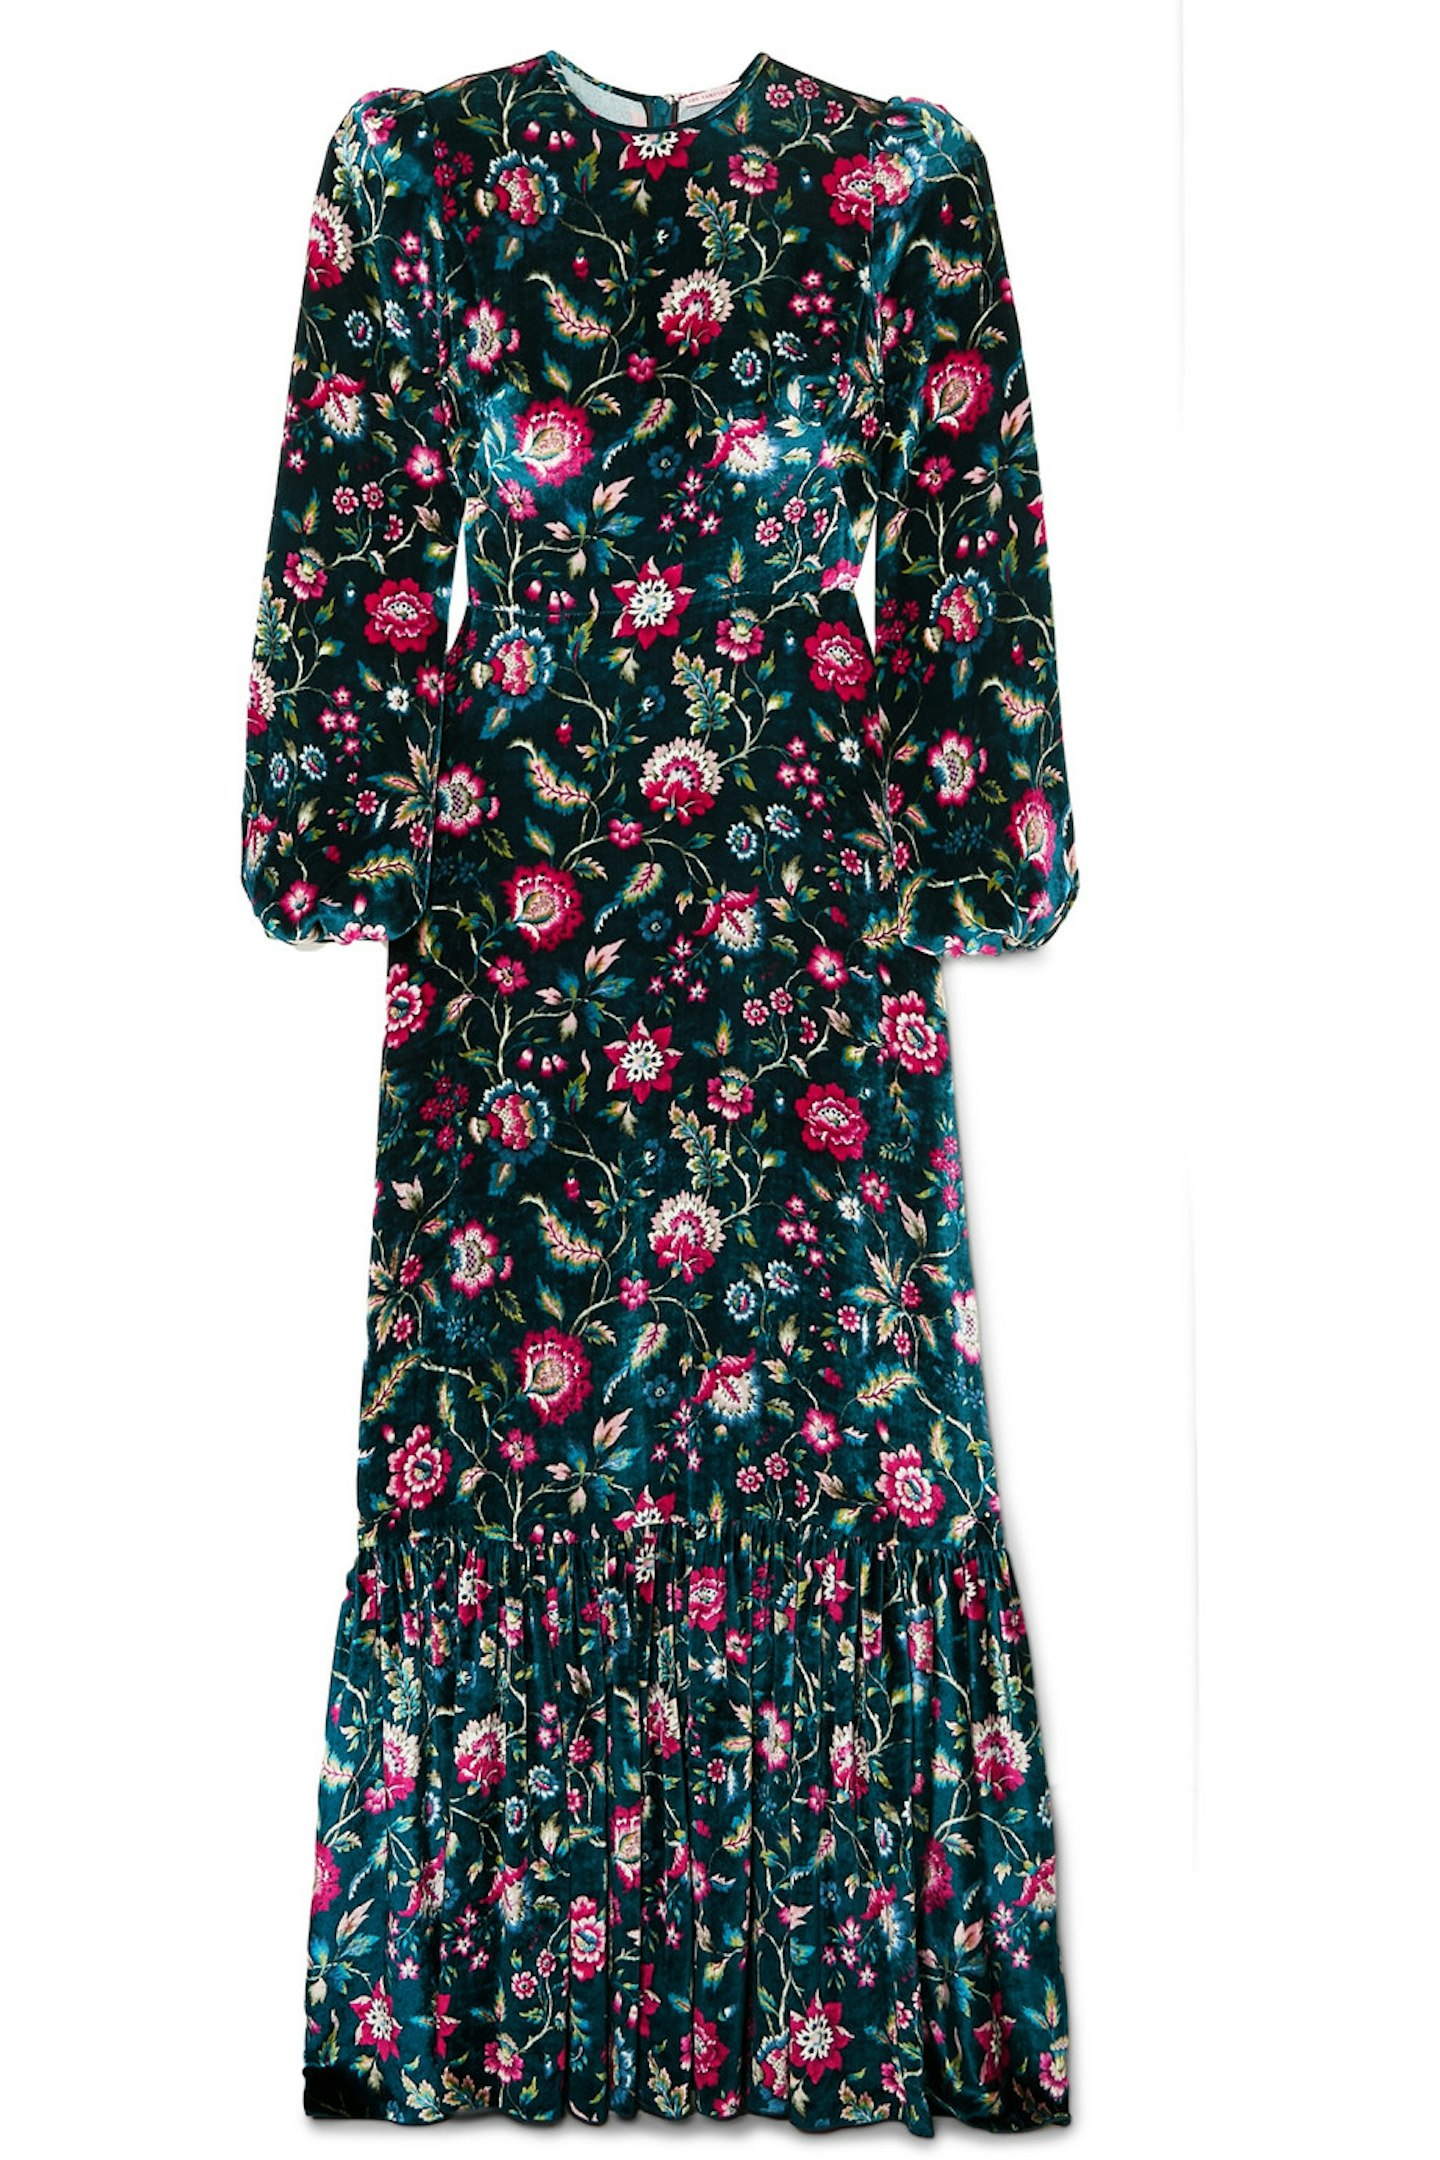 Velvet Floral Dress, £1200